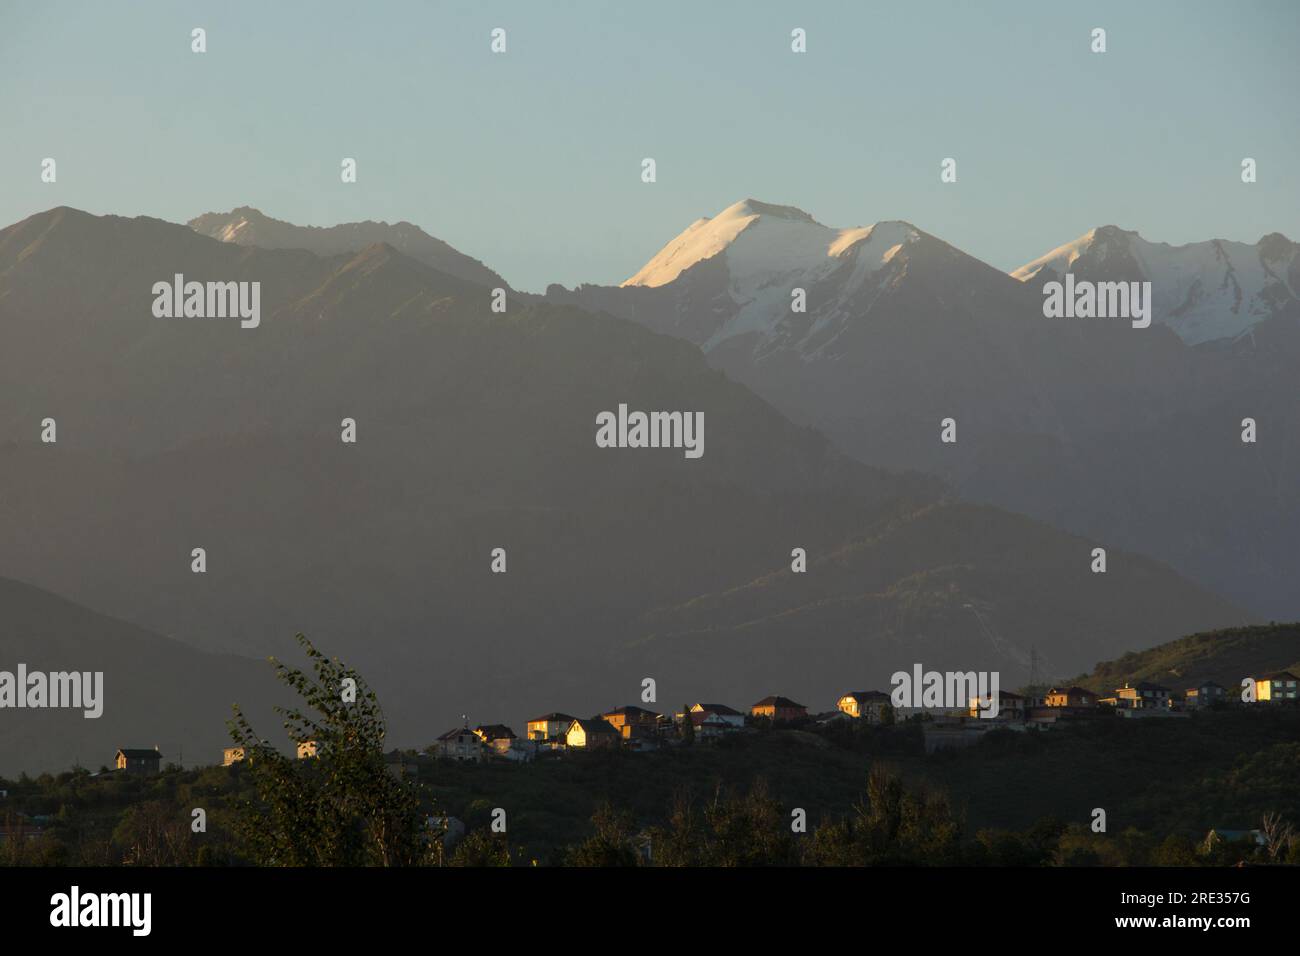 Le montagne innevate dietro una fila di case private sul pendio, illuminate dal sole mattutino di colore arancione. Foto Stock